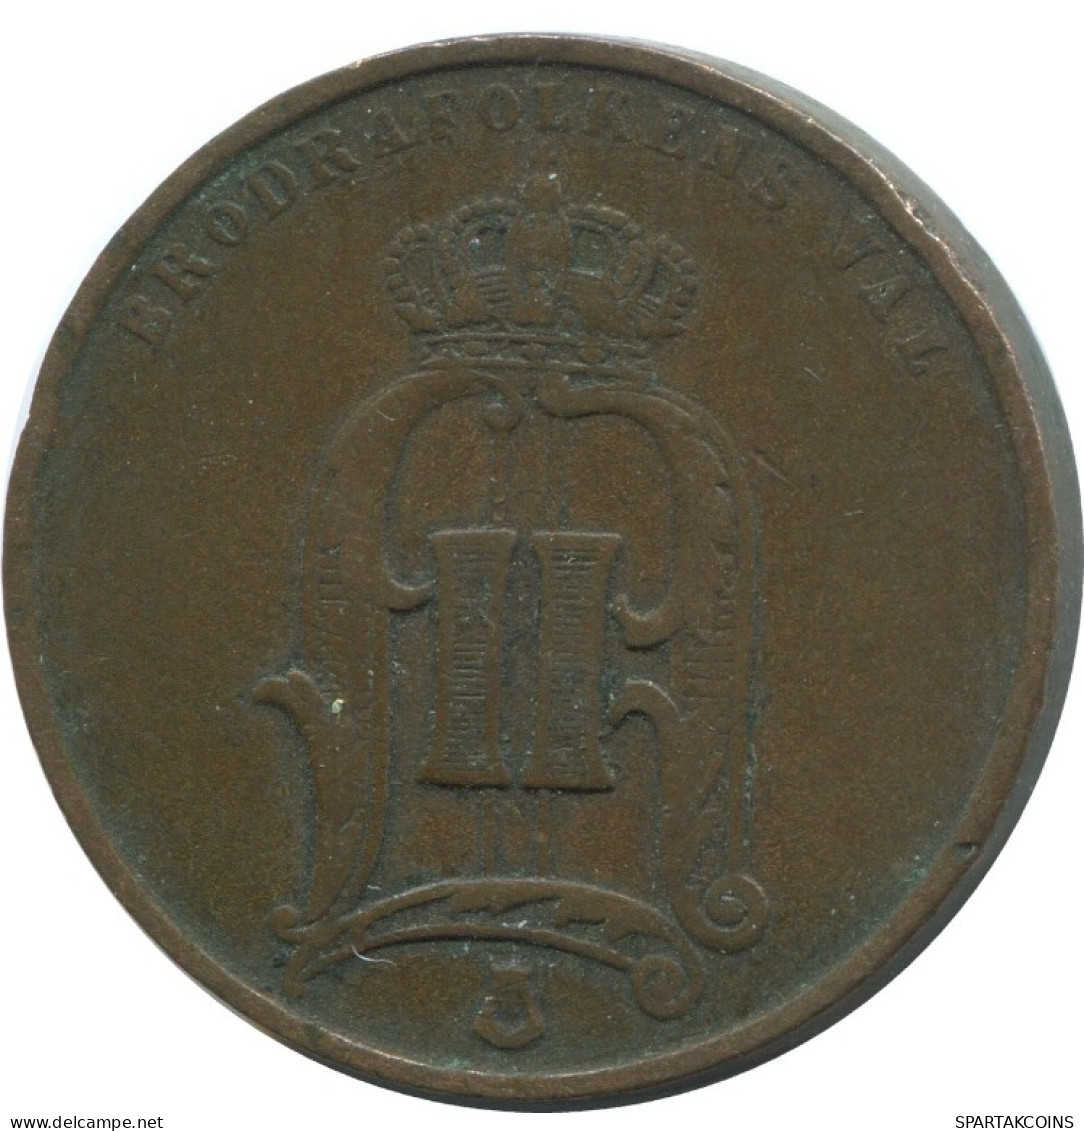 5 ORE 1874 SUECIA SWEDEN Moneda #AC573.2.E.A - Zweden